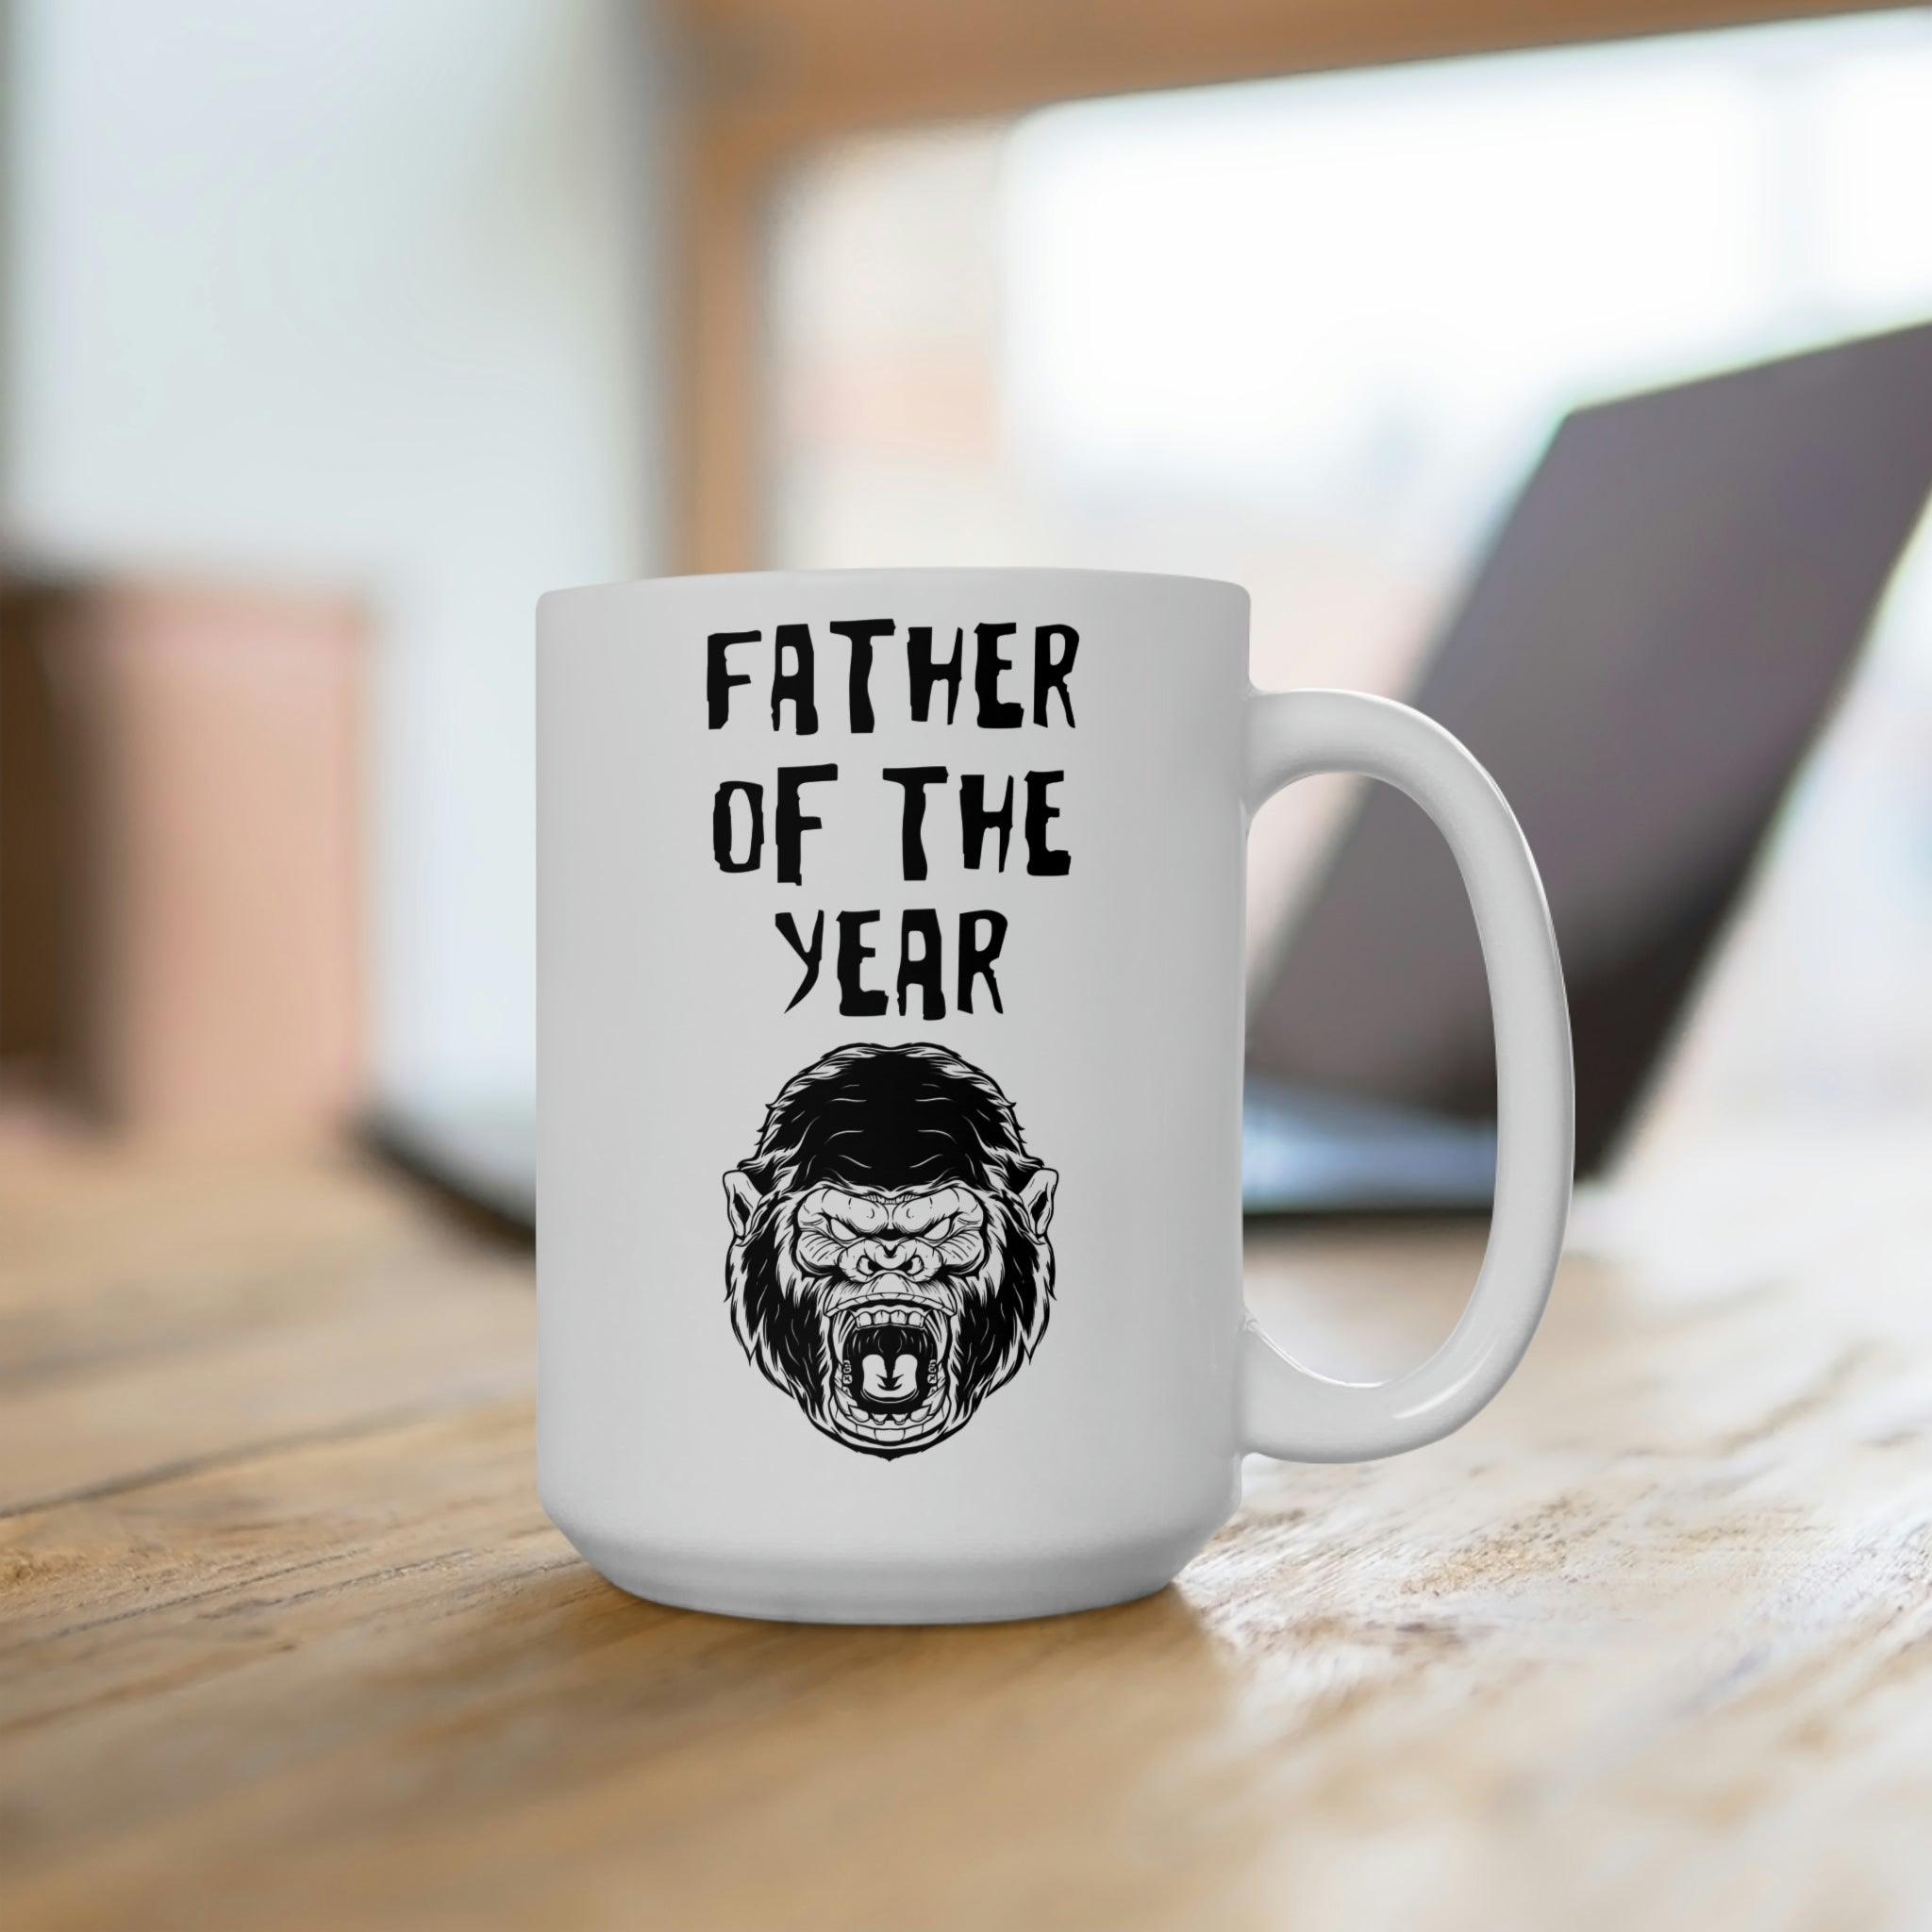 Father of the Year - Bigfoot Coffee Mug 15oz